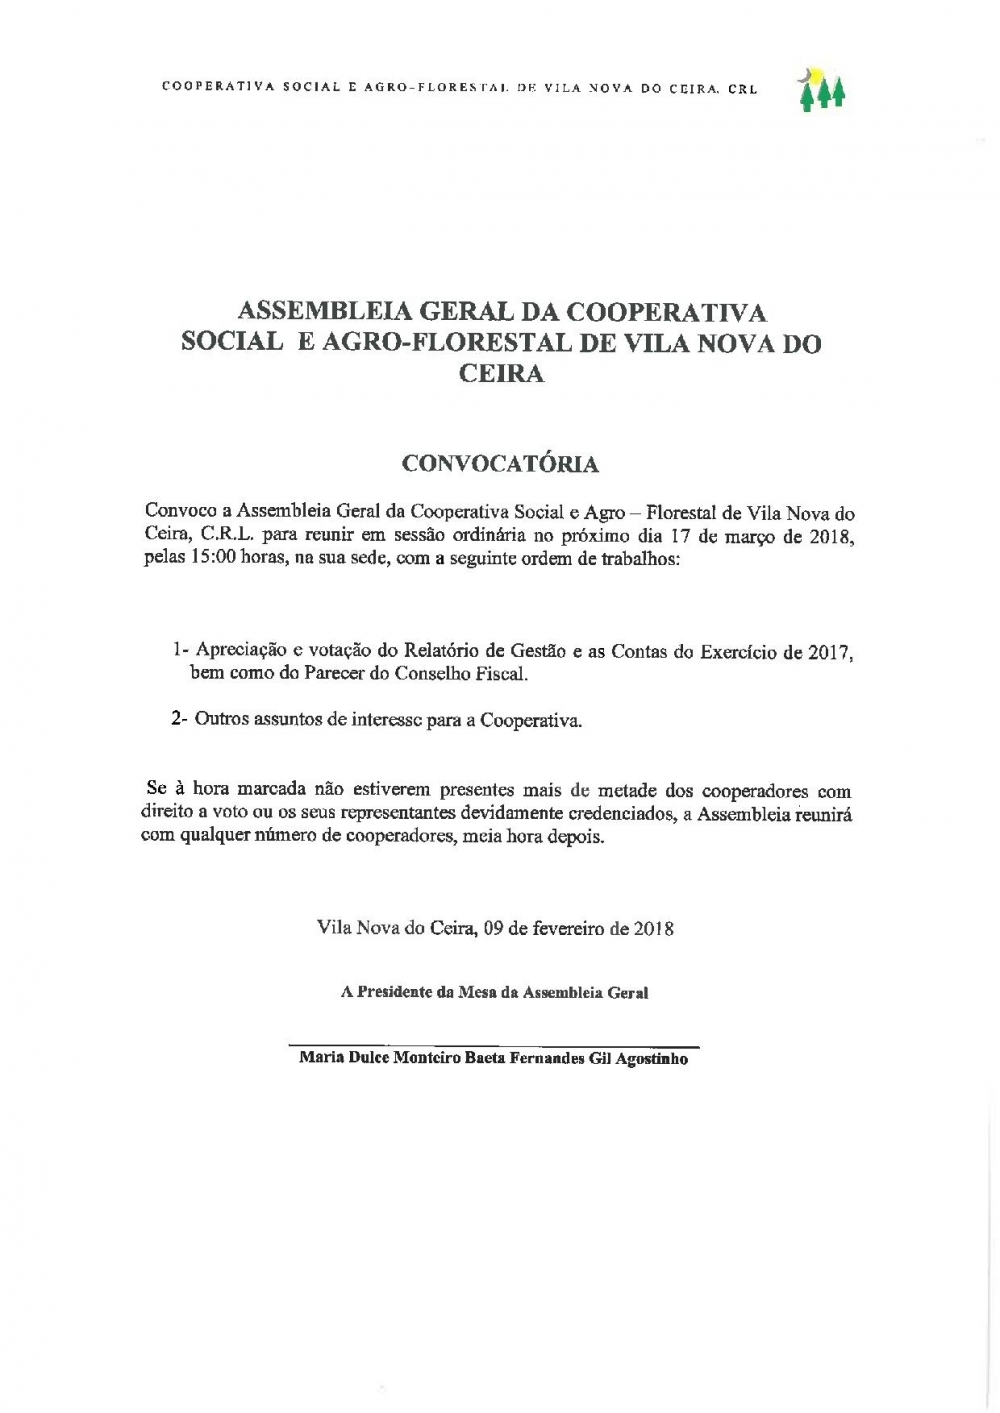 Convocatória - Assembleia Geral Cooperativa V.N.Ceira - 17 de Março de 2018 - www.coopvnc.pt